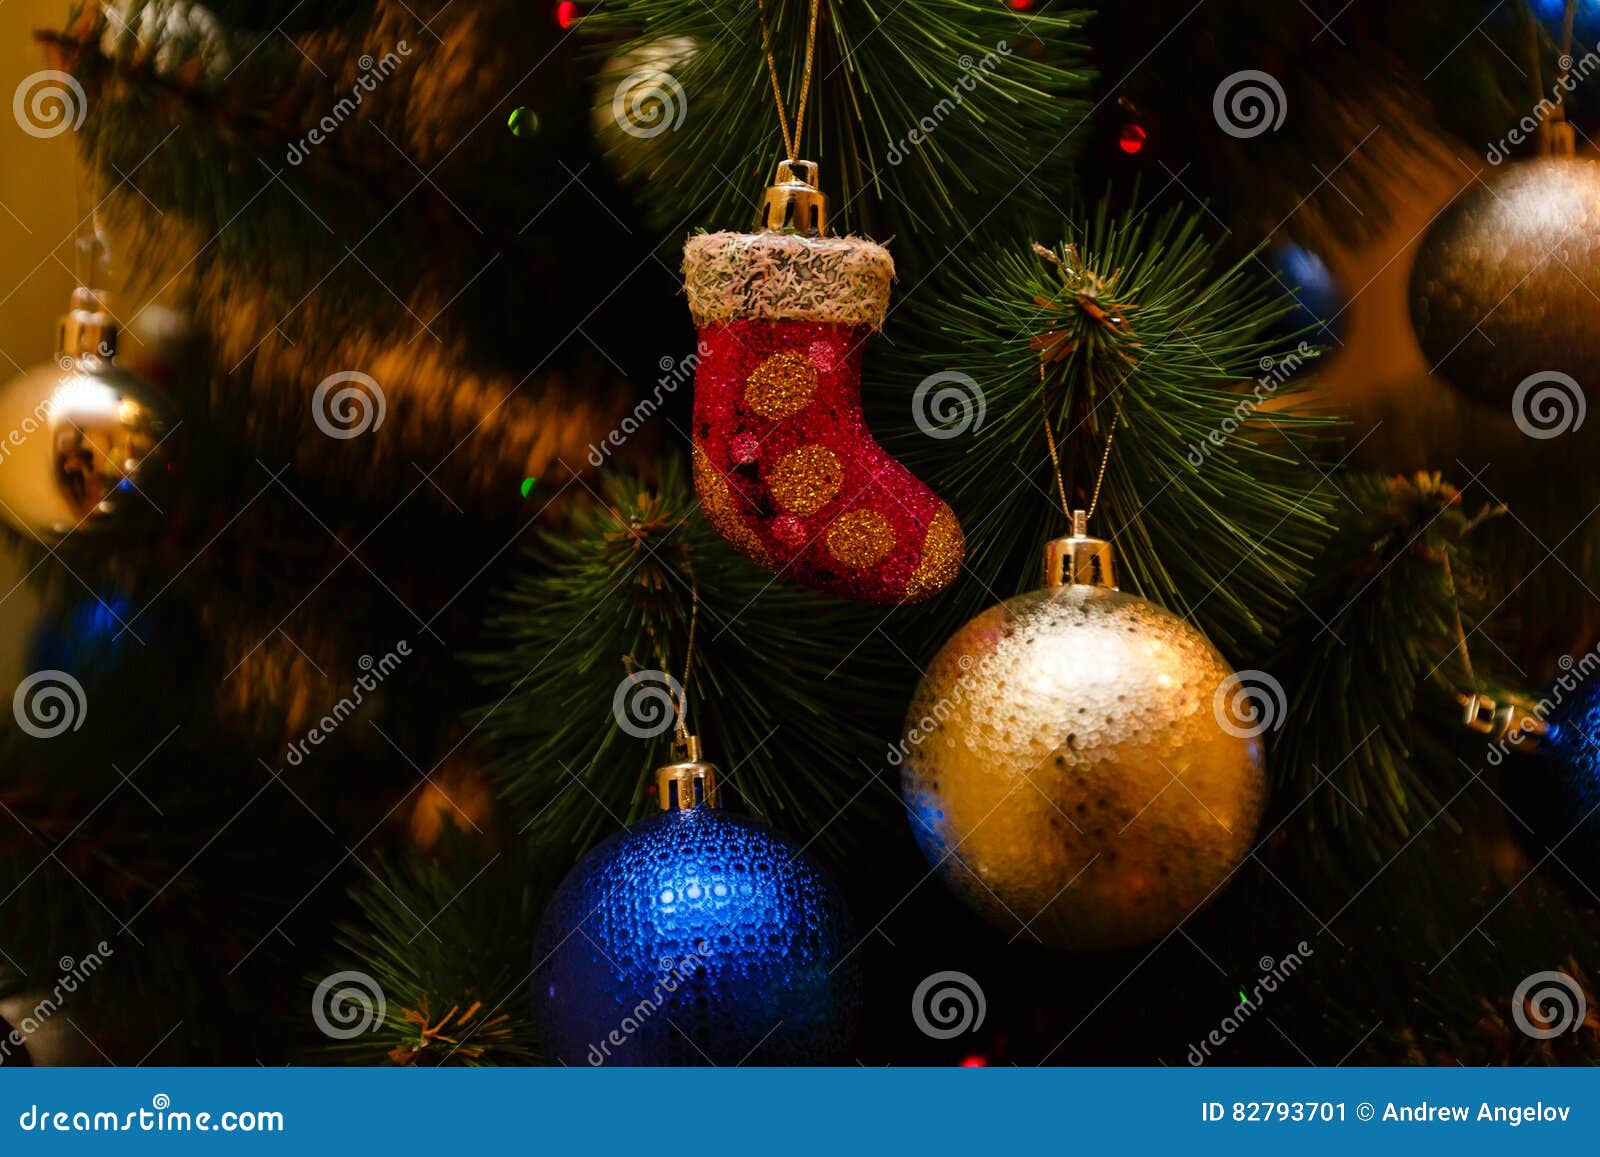 Weihnachtsverzierungen auf einem Baum. Weihnachtsverzierungen auf einer Baumdekoration traditionell